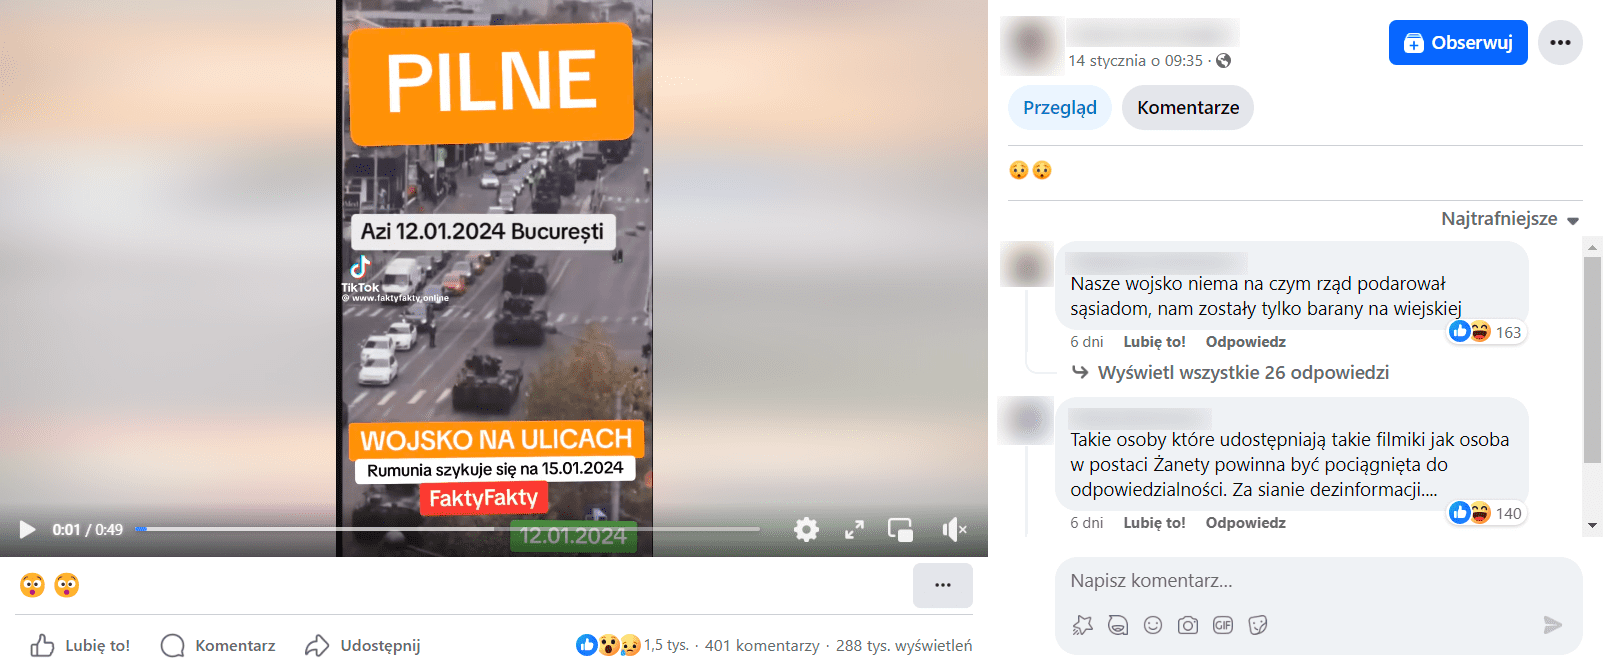 Zrzut ekranu z posta na Facebooku. Nagranie przedstawiające poruszającą się kolumnę czołgów i informacja, że film pochodzi z Bukaresztu i został zrobiony 12 stycznia 2024 roku. 1,5 tys. reakcji, 401 komentarzy, 288 tys. wyświetleń. 